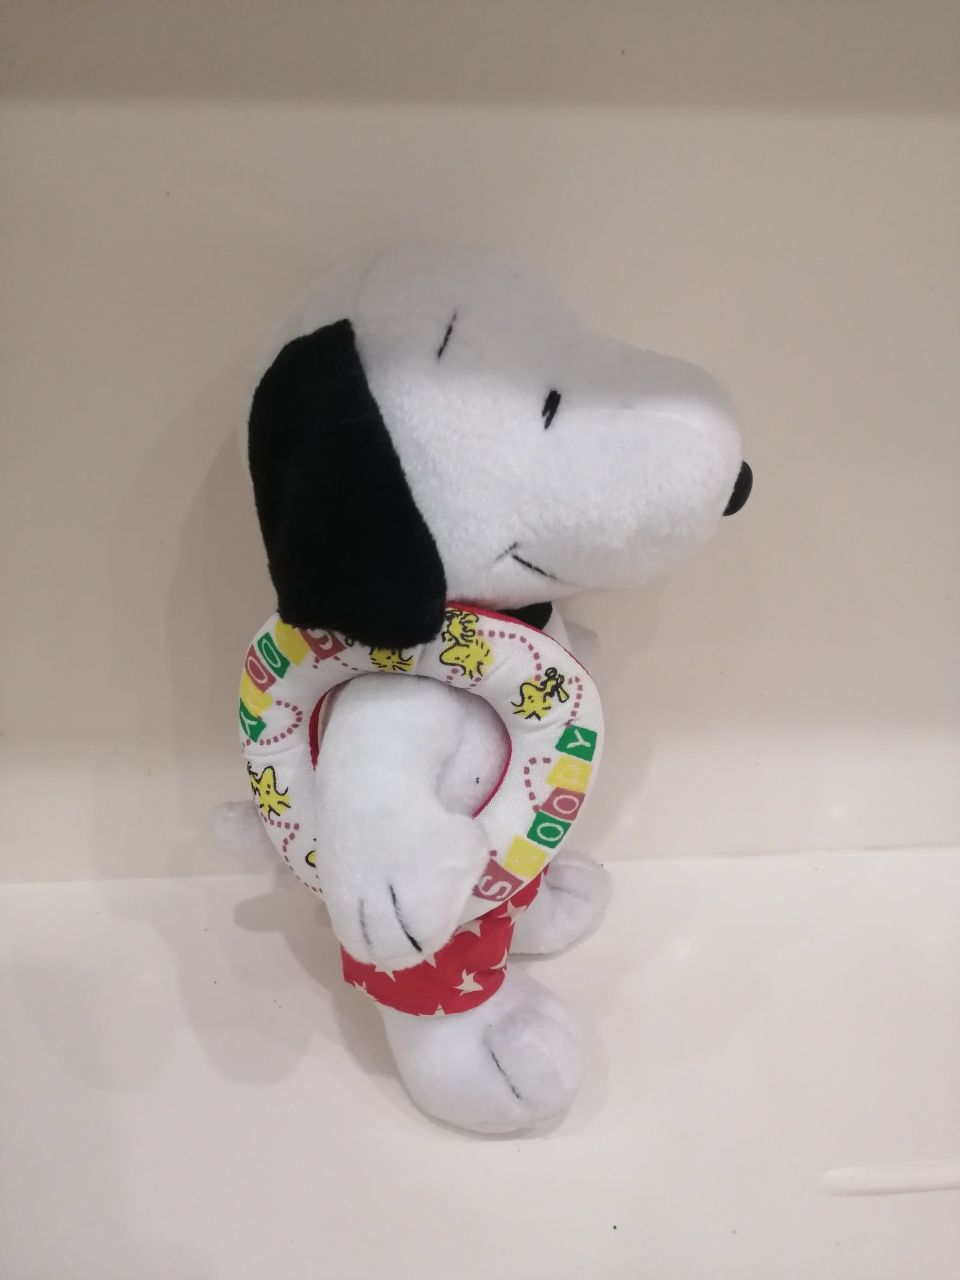 Snoopy com bóia novo